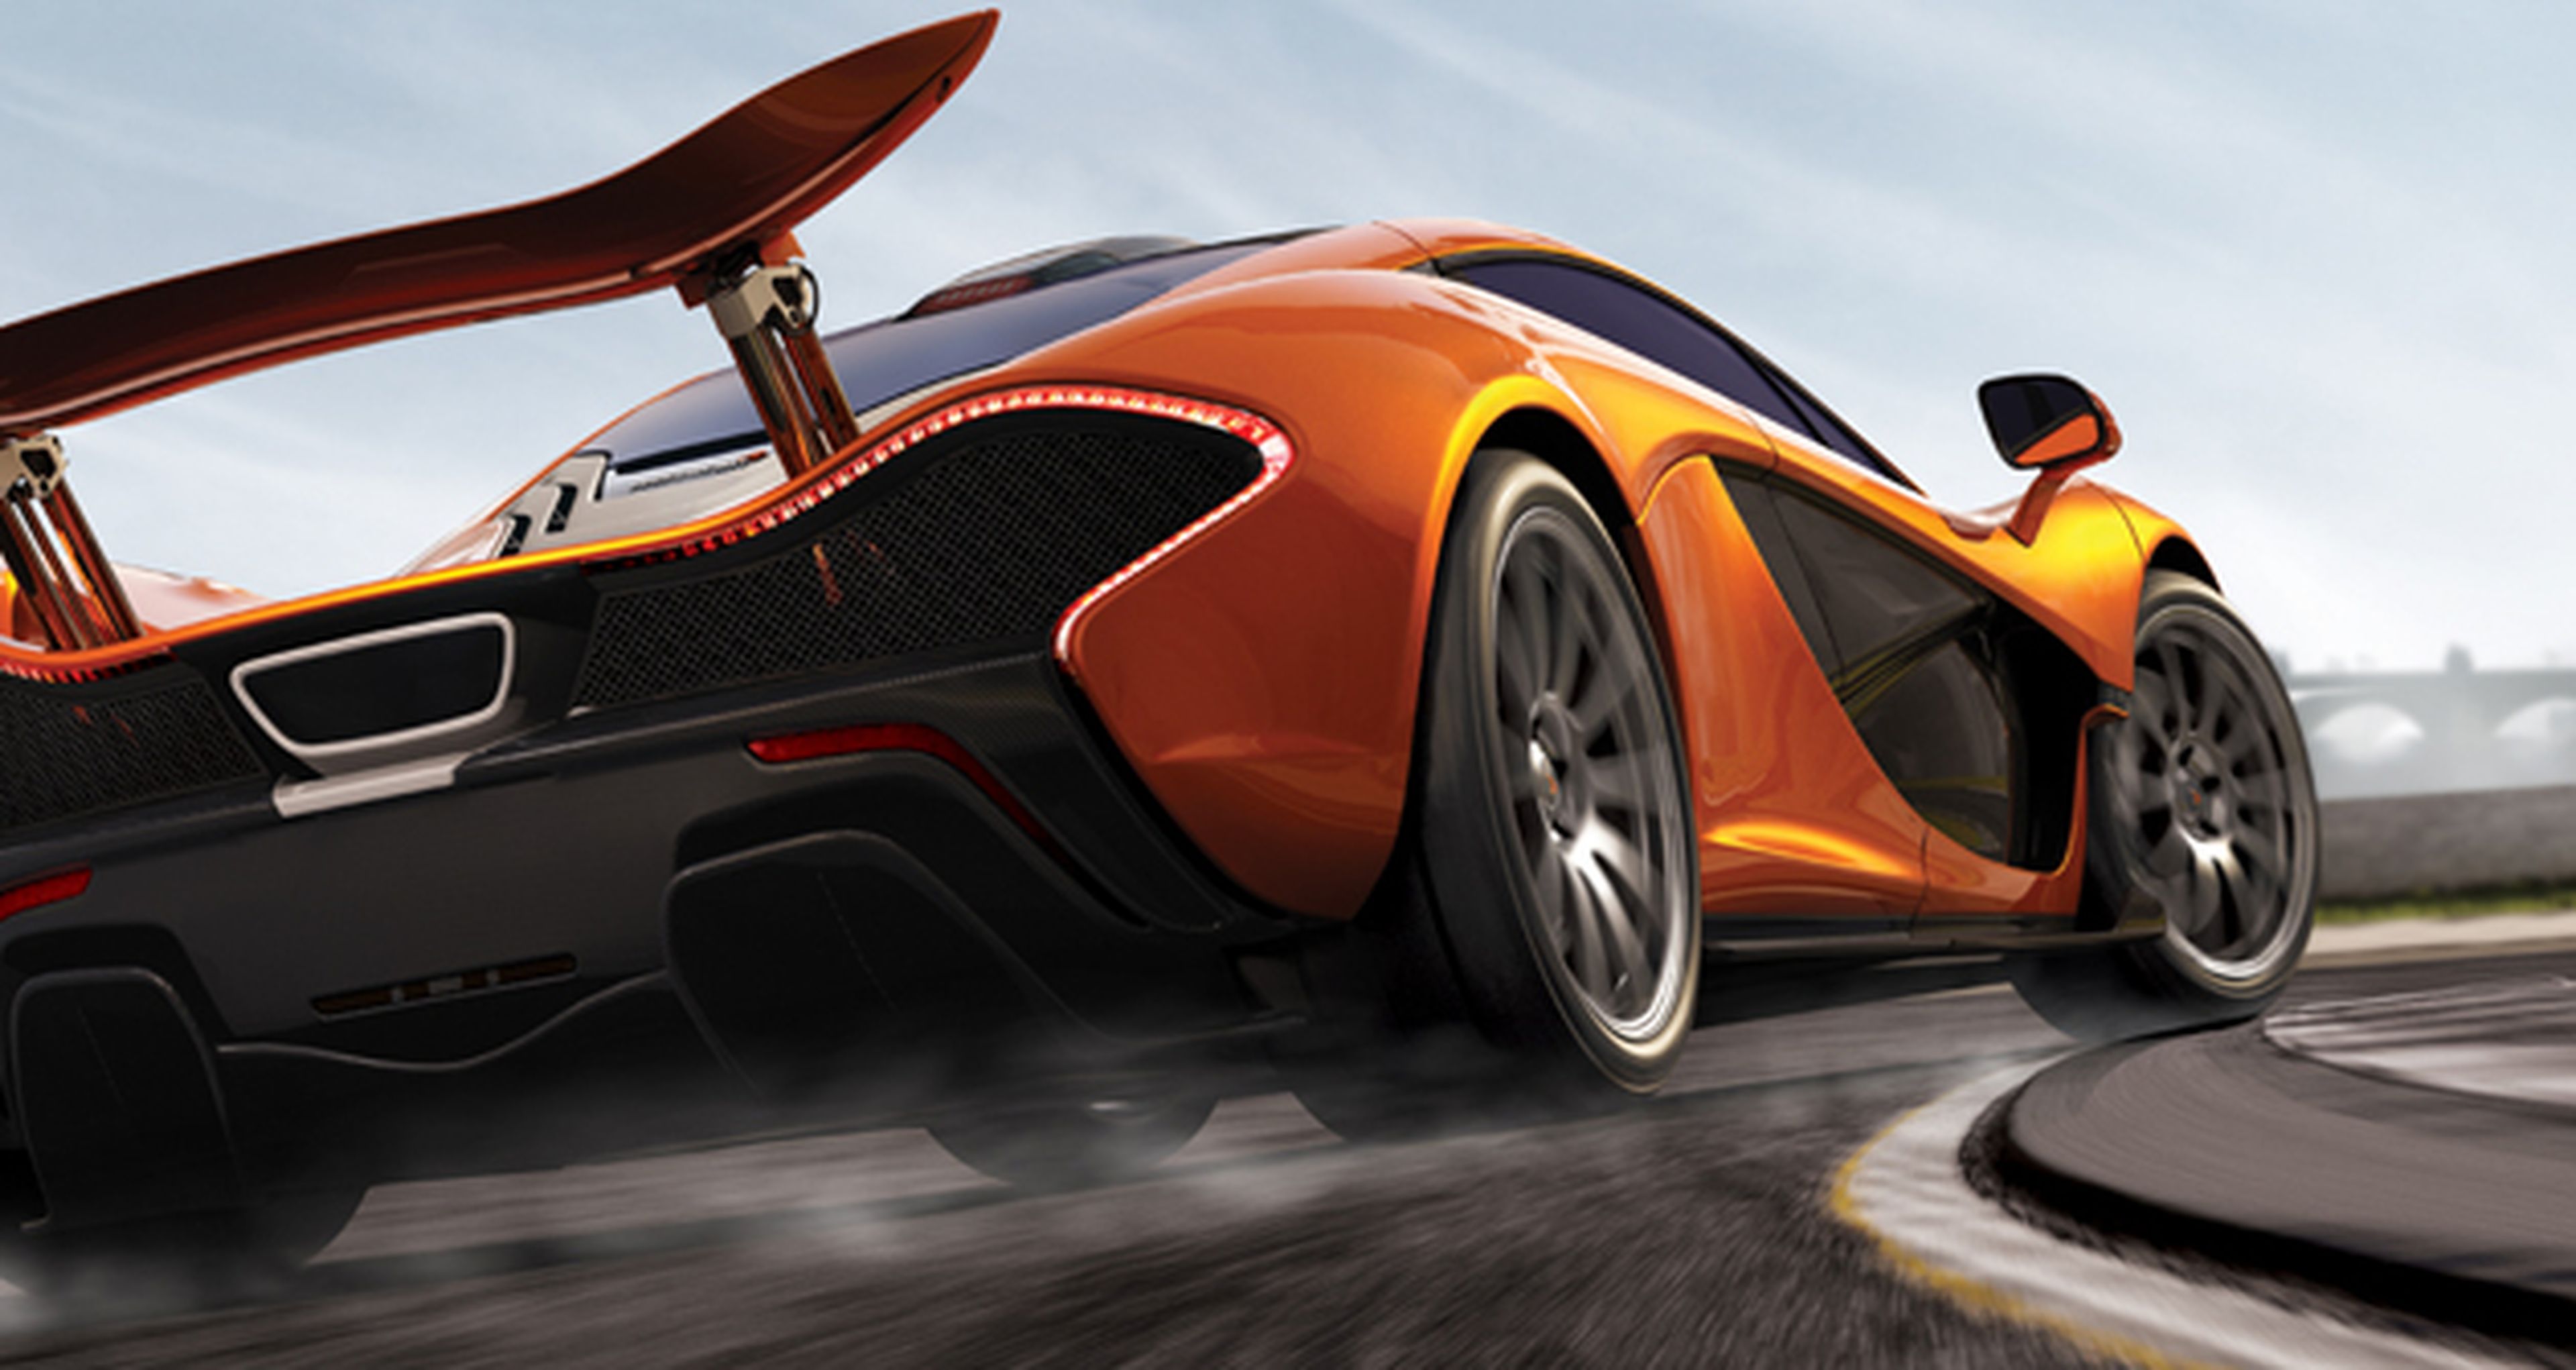 Análisis de Forza Motorsport 5 para Xbox One